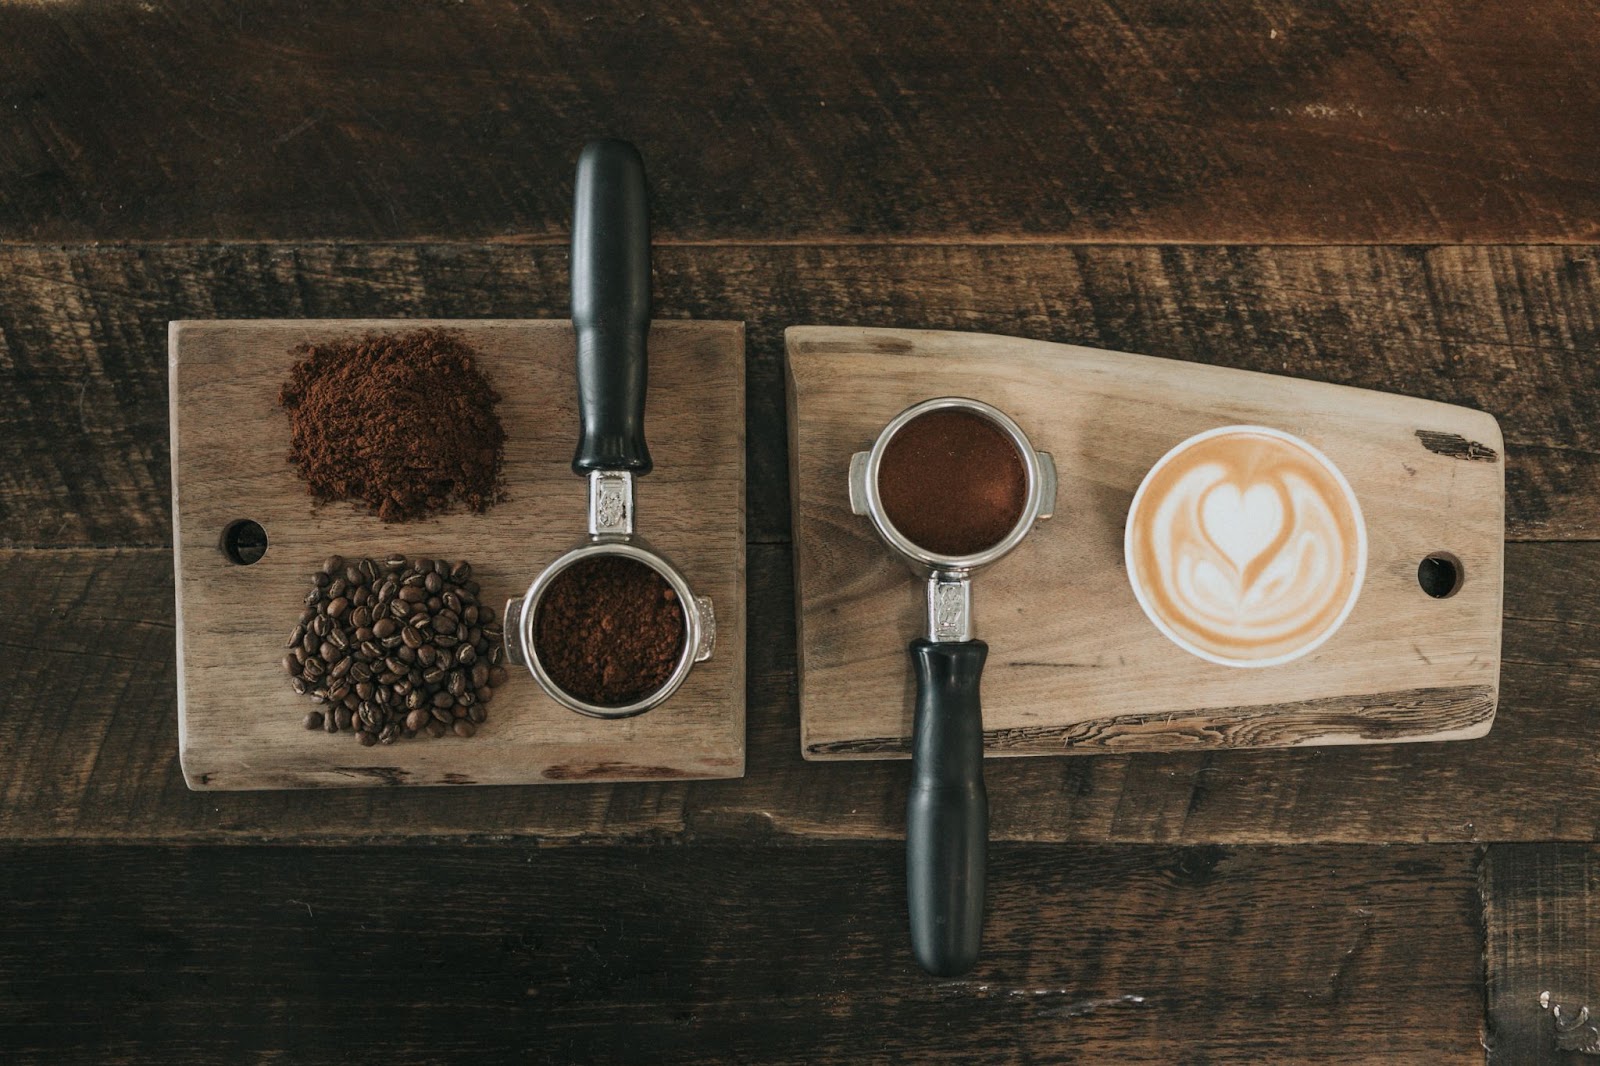 Coffee scales for espresso